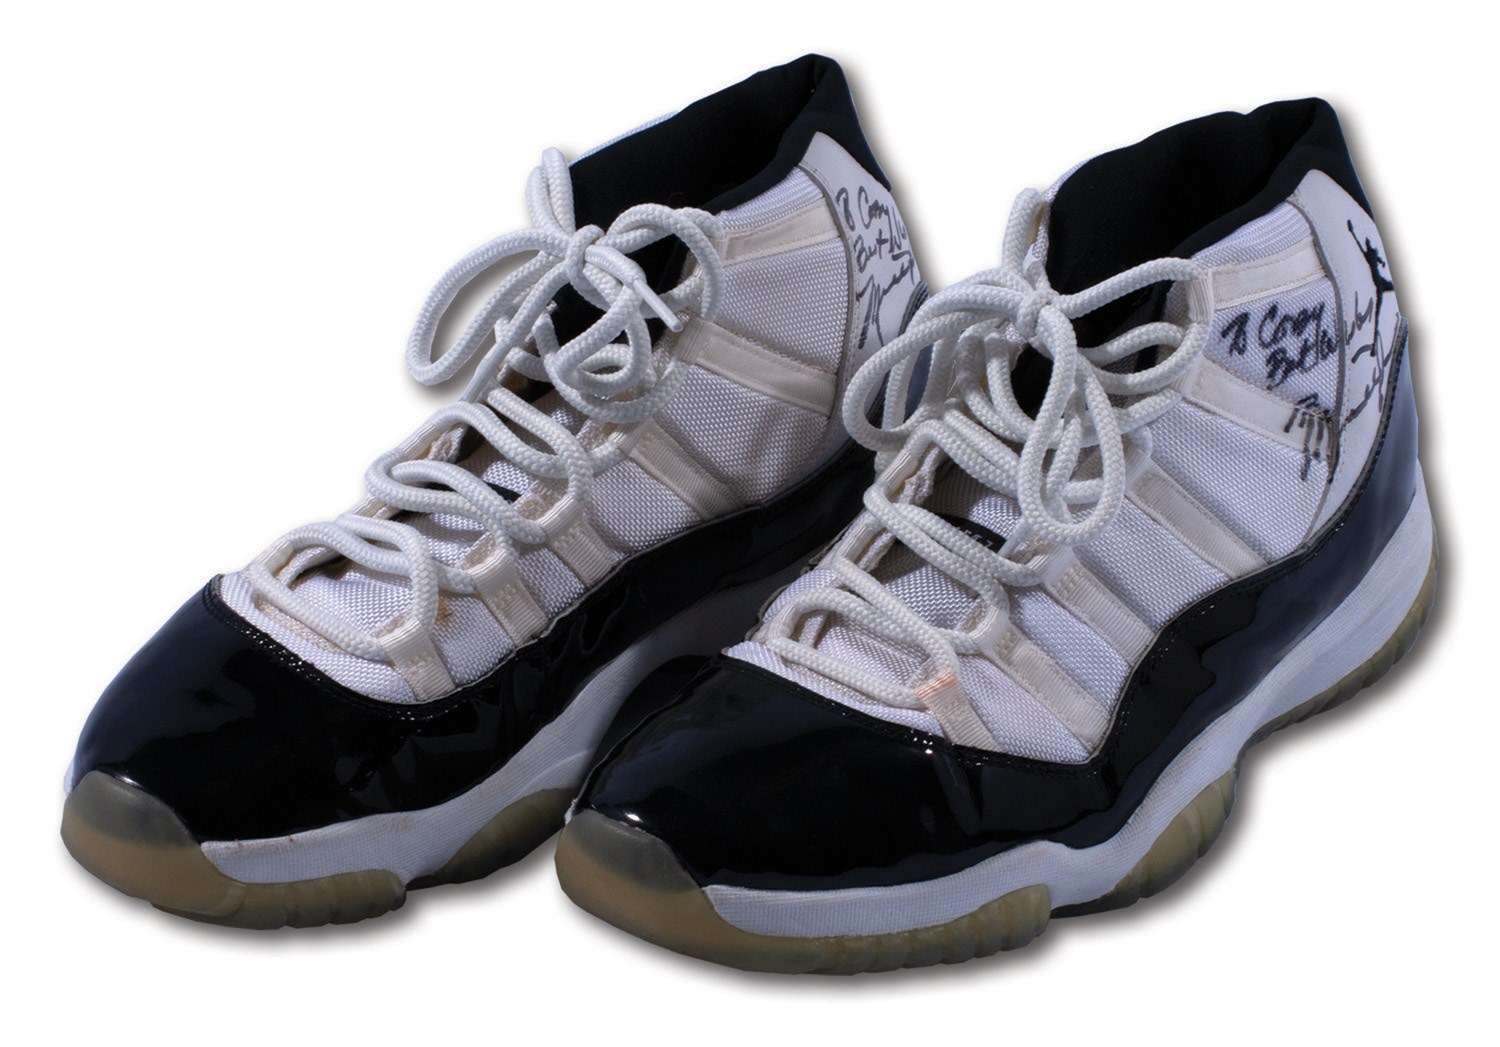 game worn jordan shoes